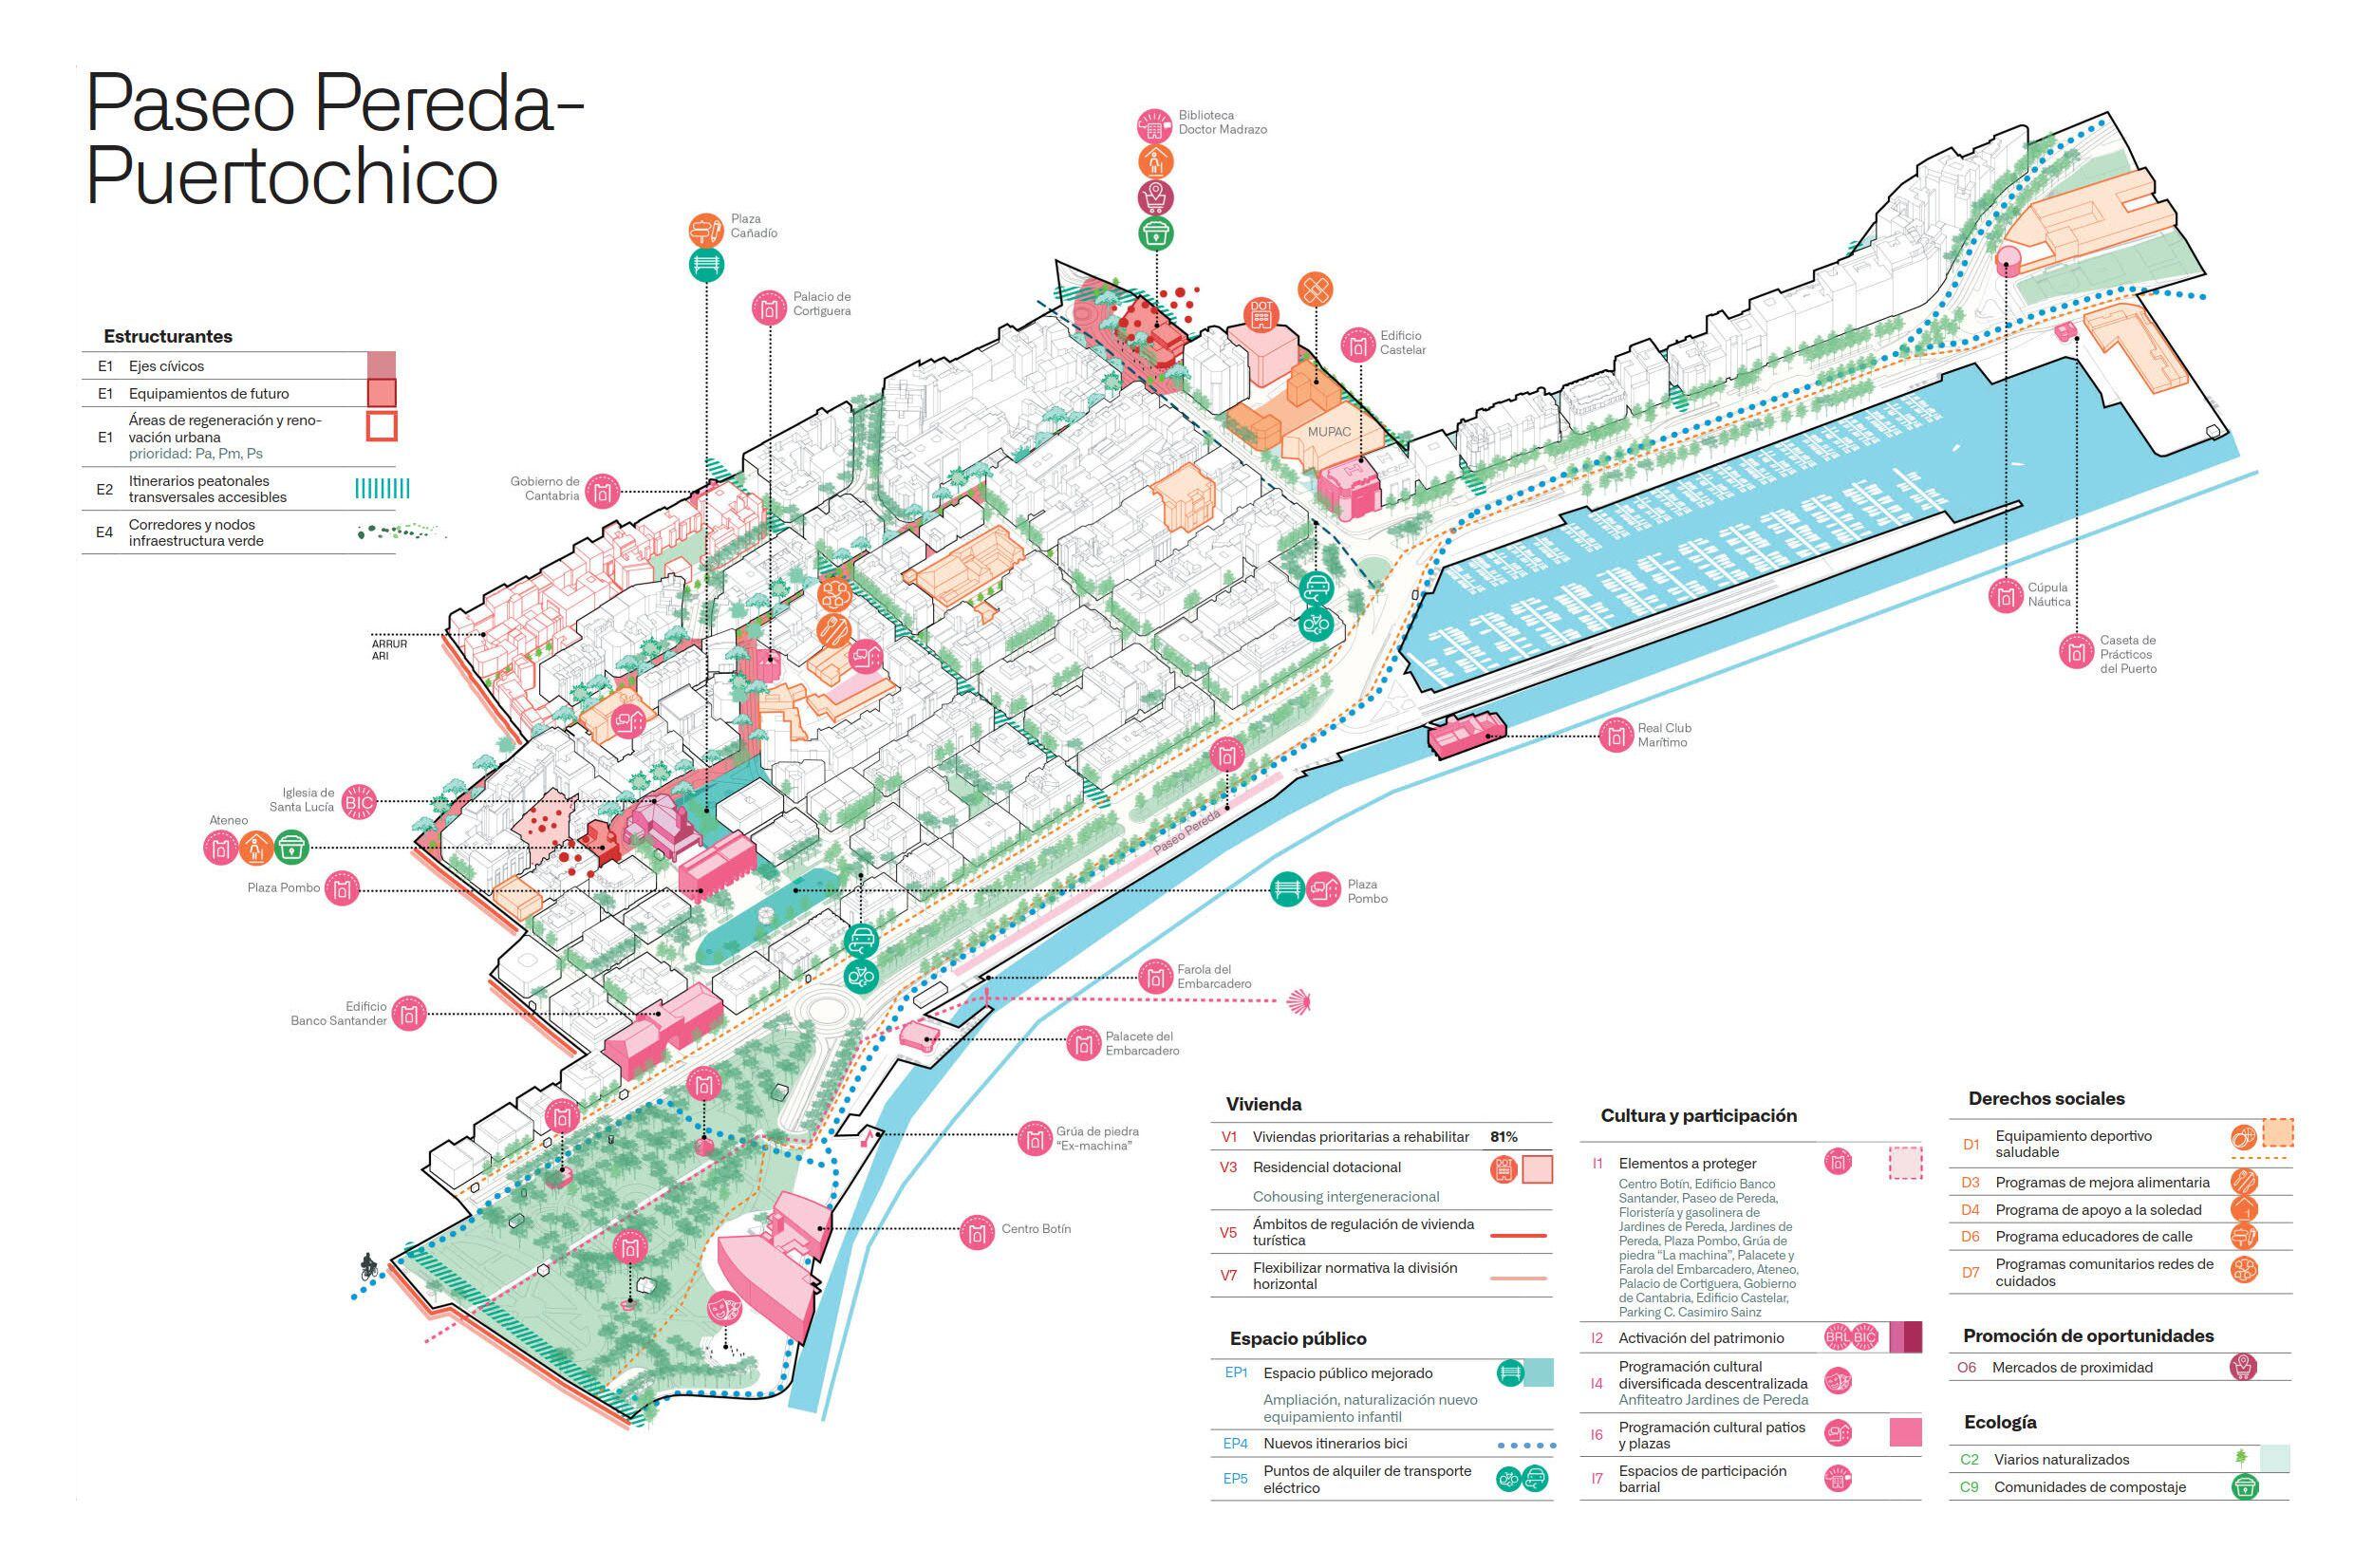 El plan diseñado para cada uno de los 32 barrios en los que se divide Santander analiza las fortalezas, debilidades y oportunidades que permitirían avanzar hacia una verdadera ciudad de los 15 minutos.